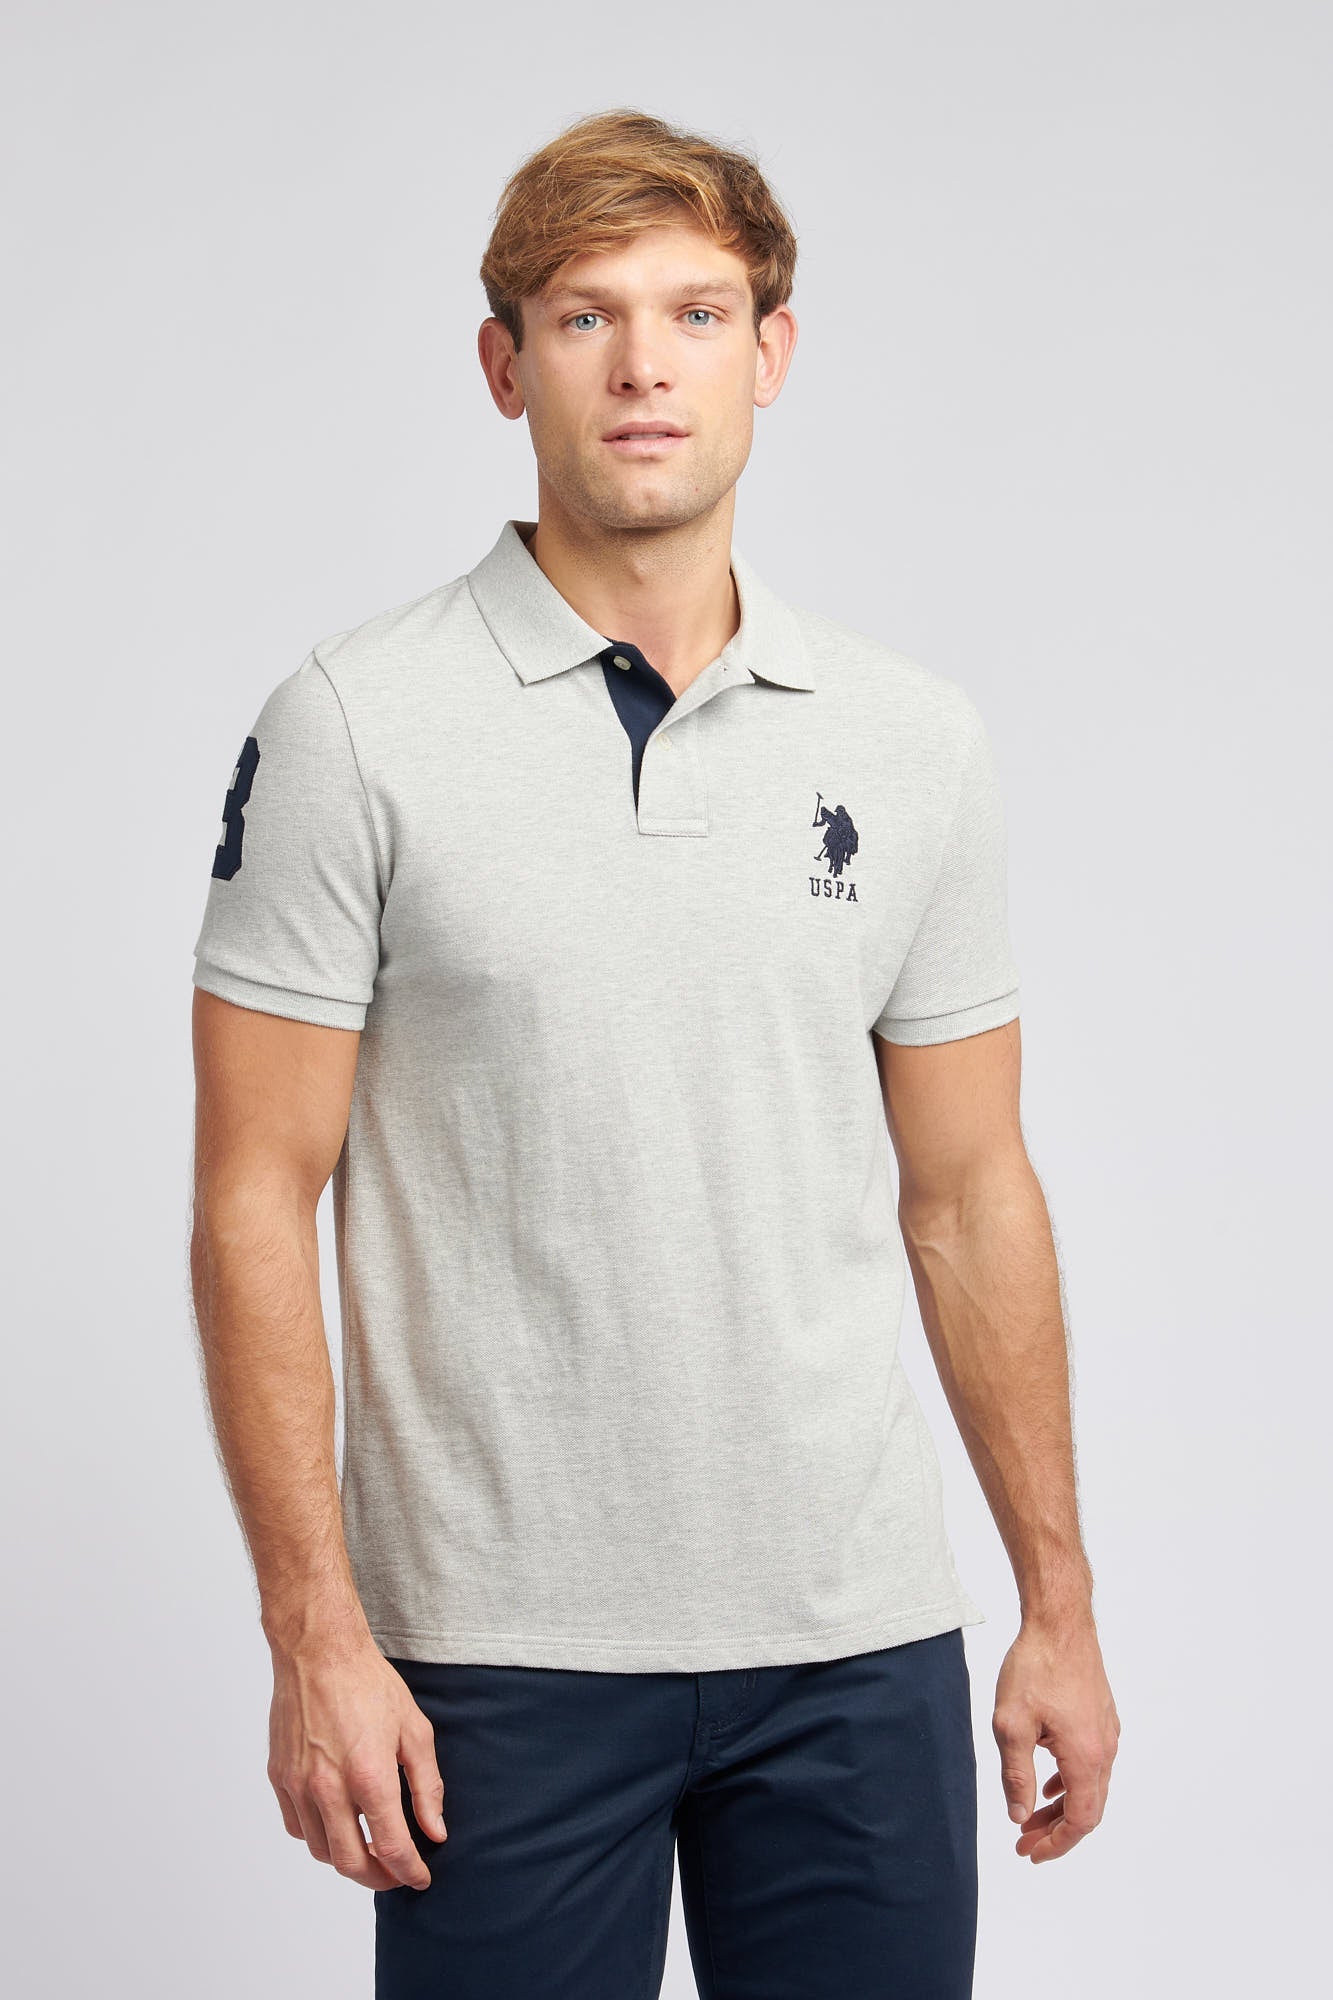 U.S. Polo Assn. Mens Player 3 Pique Polo Shirt in Mid Grey Marl